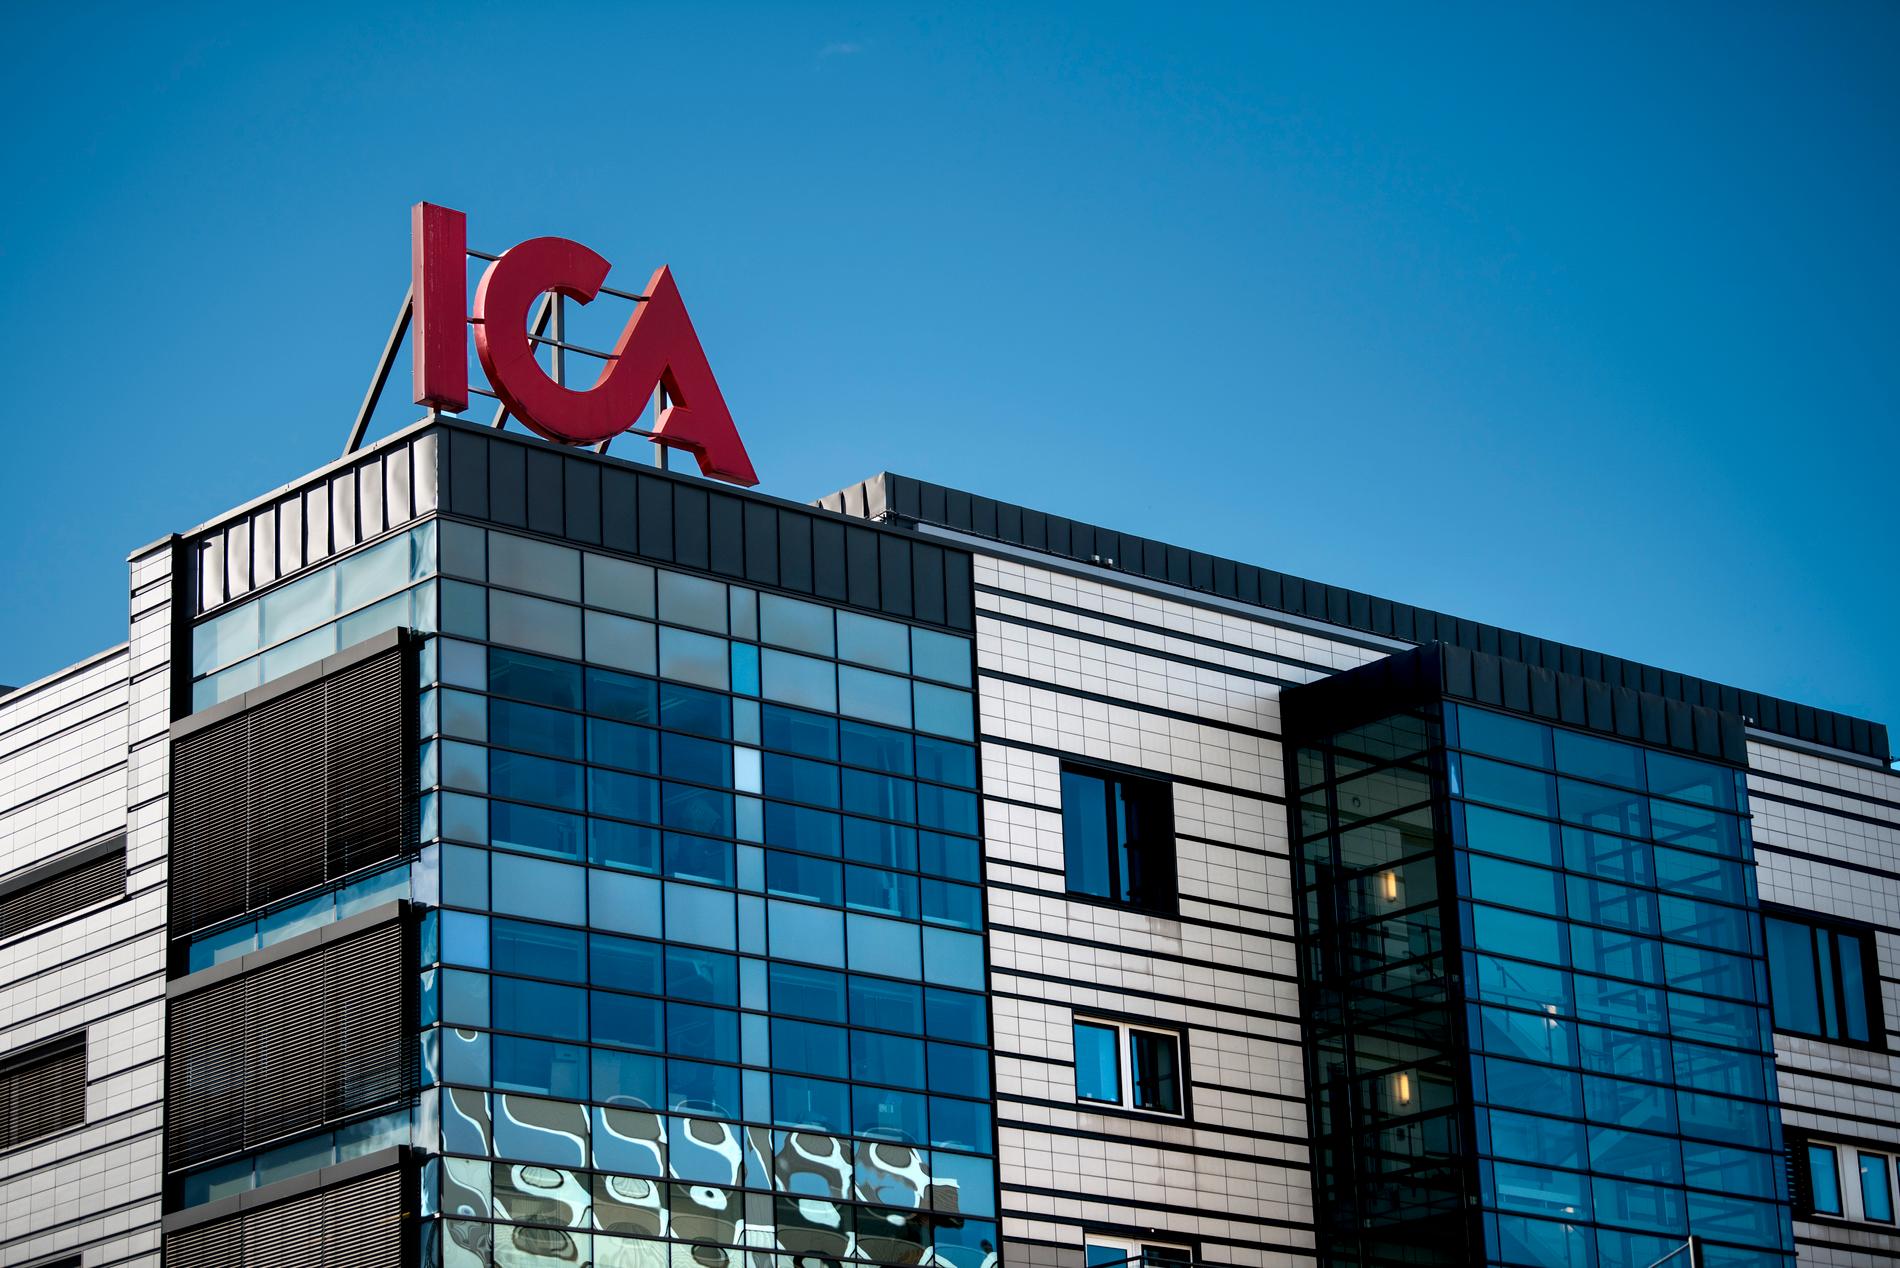 Ica har anmälts till Konkurrensverket för misstänkt kartellbildning. Matjätten anklagas för att styra priserna.